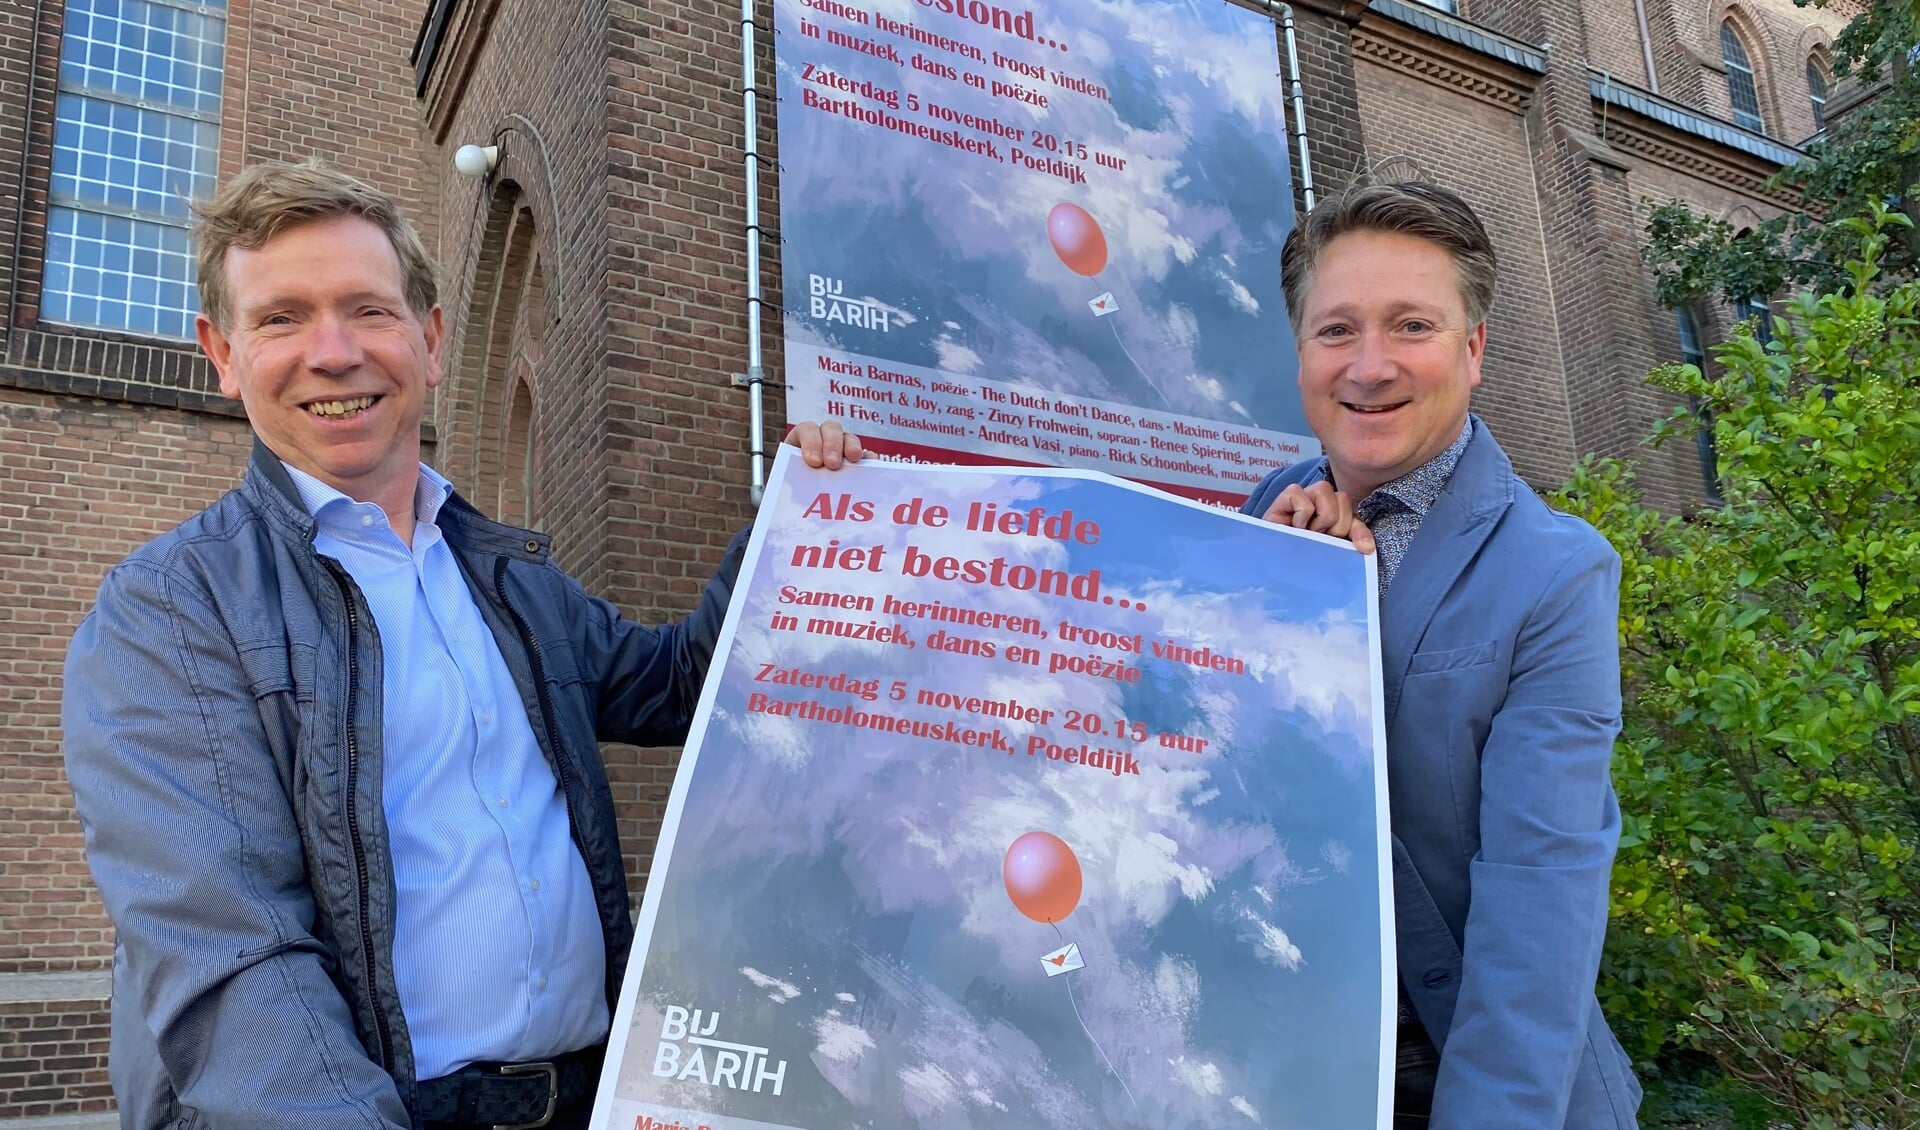 Martien van Dijk (l.) en Wijnand Folkeringa van Stichting BijBarth kijken uit naar het evenement ‘Als de liefde niet bestond...’ in Poeldijk.